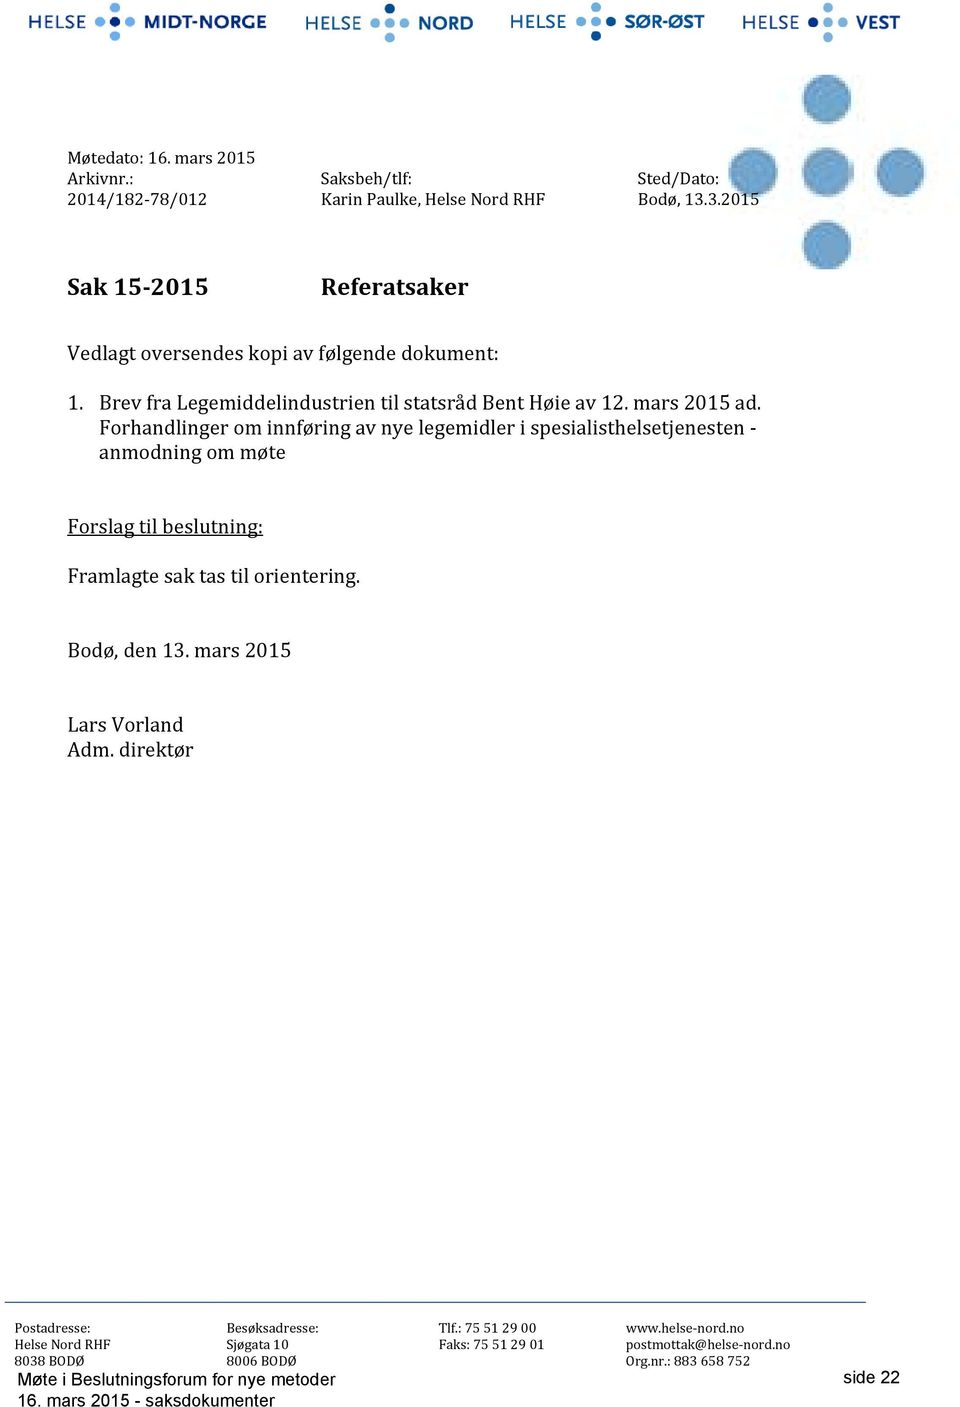 Brev fra Legemiddelindustrien til statsråd Bent Høie av 12. mars 2015 ad.